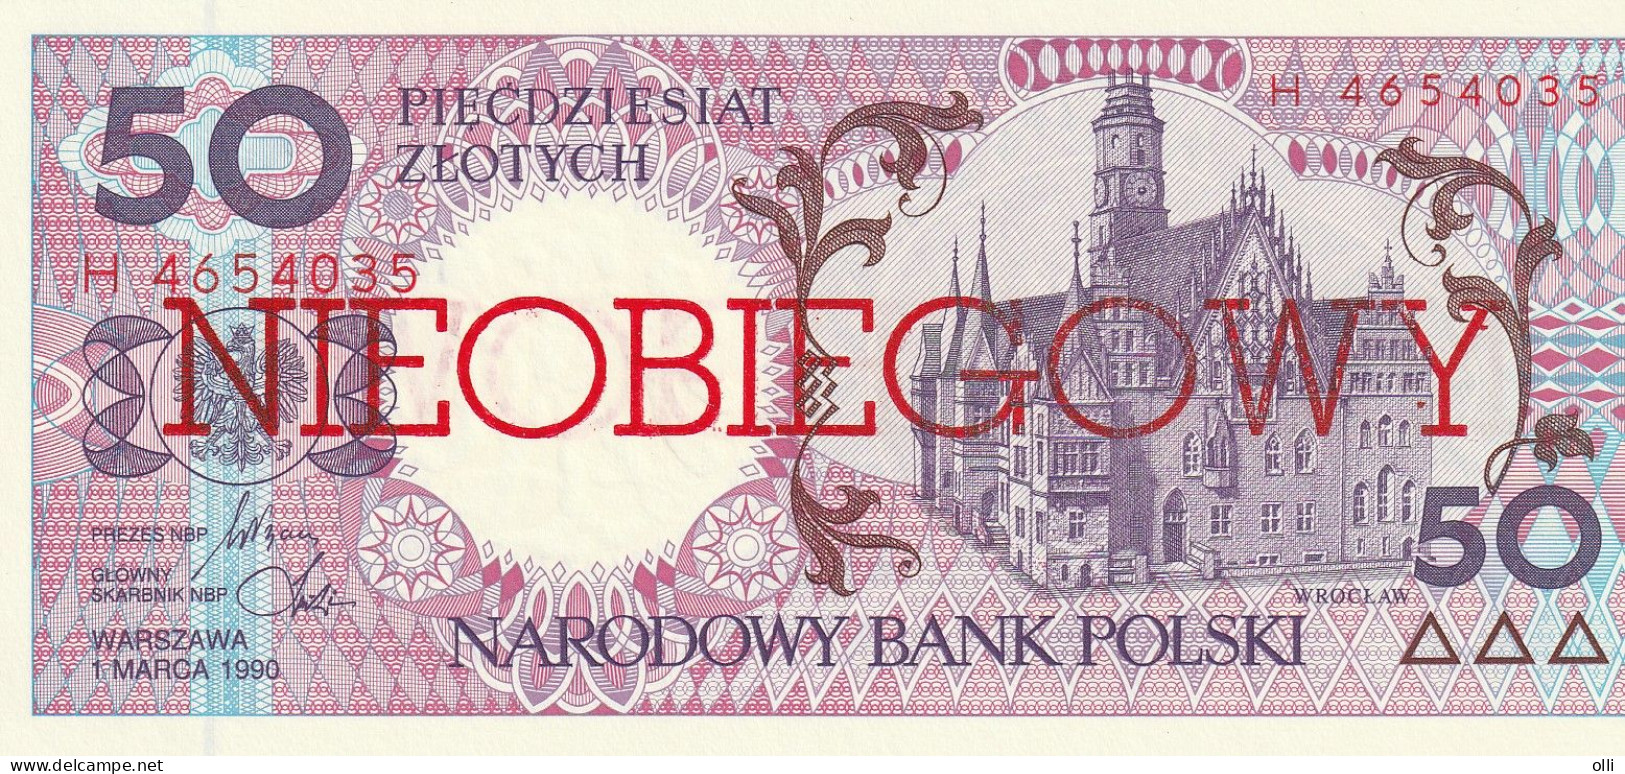 POLAND 50 ZLOTYCH NIEOBIEGOWY  1990 P-169 UNC - Pologne